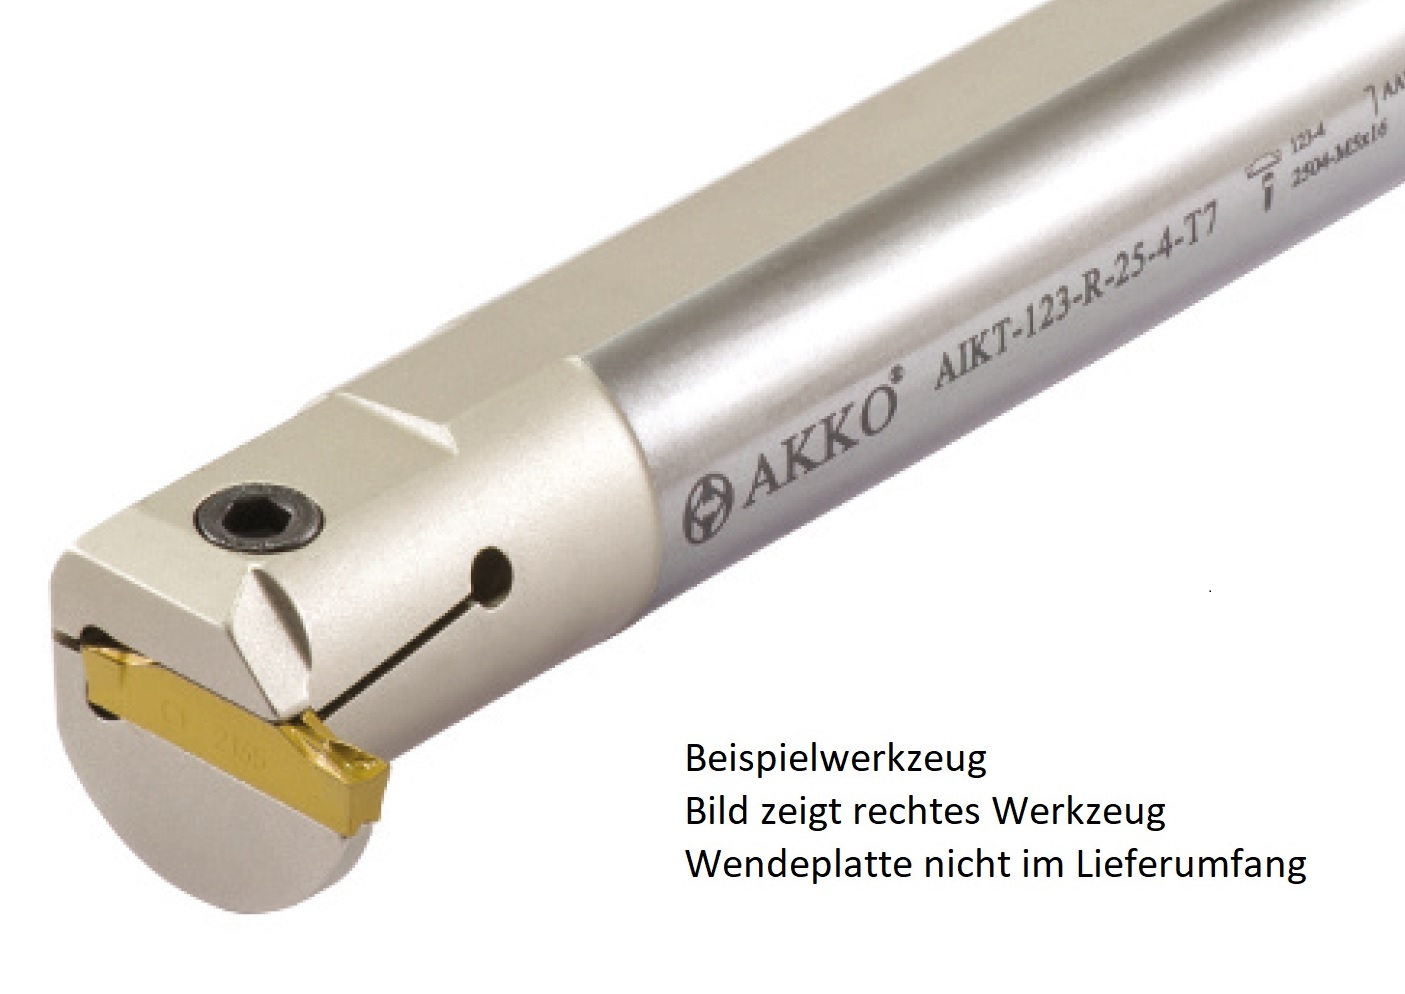 AKKO-Innen-Stechhalter, kompatibel mit Sandvik-Stechplatte 123-3
Schaft-ø 32, ohne Innenkühlung, links